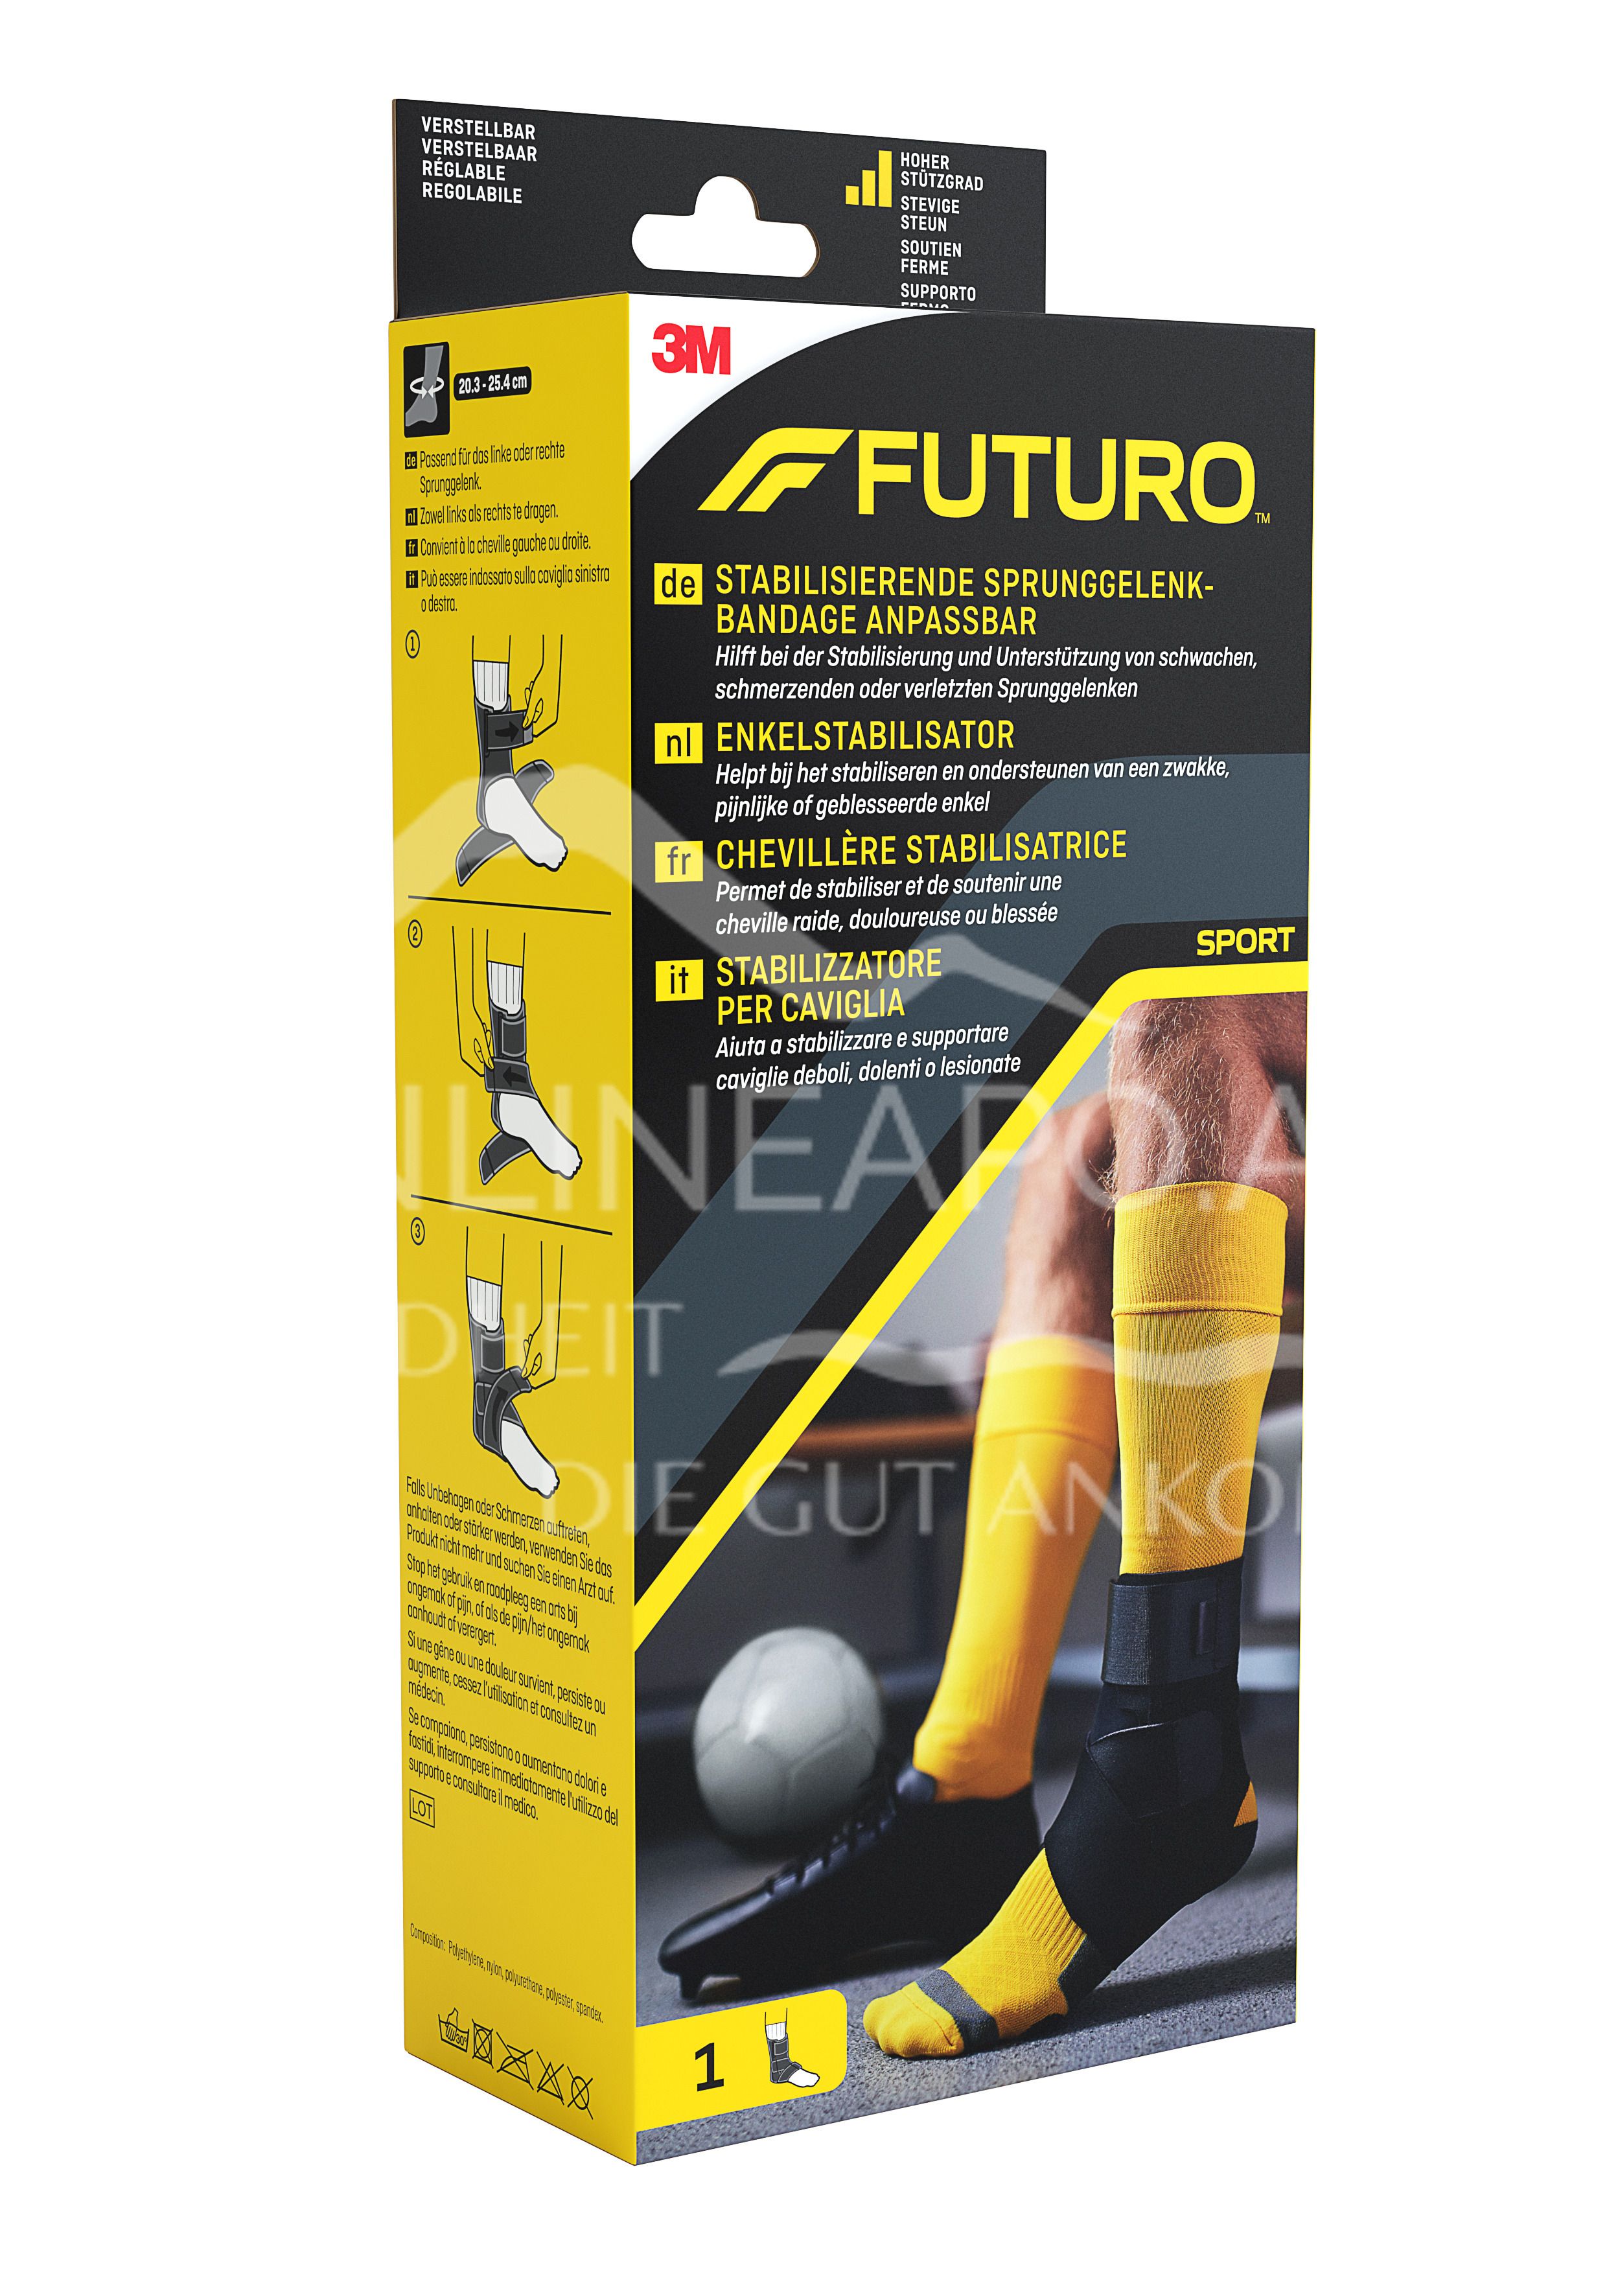 3M FUTURO™ Stabilisierende Sprunggelenk-Bandage anpassbar 46645, Verstellbar SPORT (20.3 - 25.4 cm)